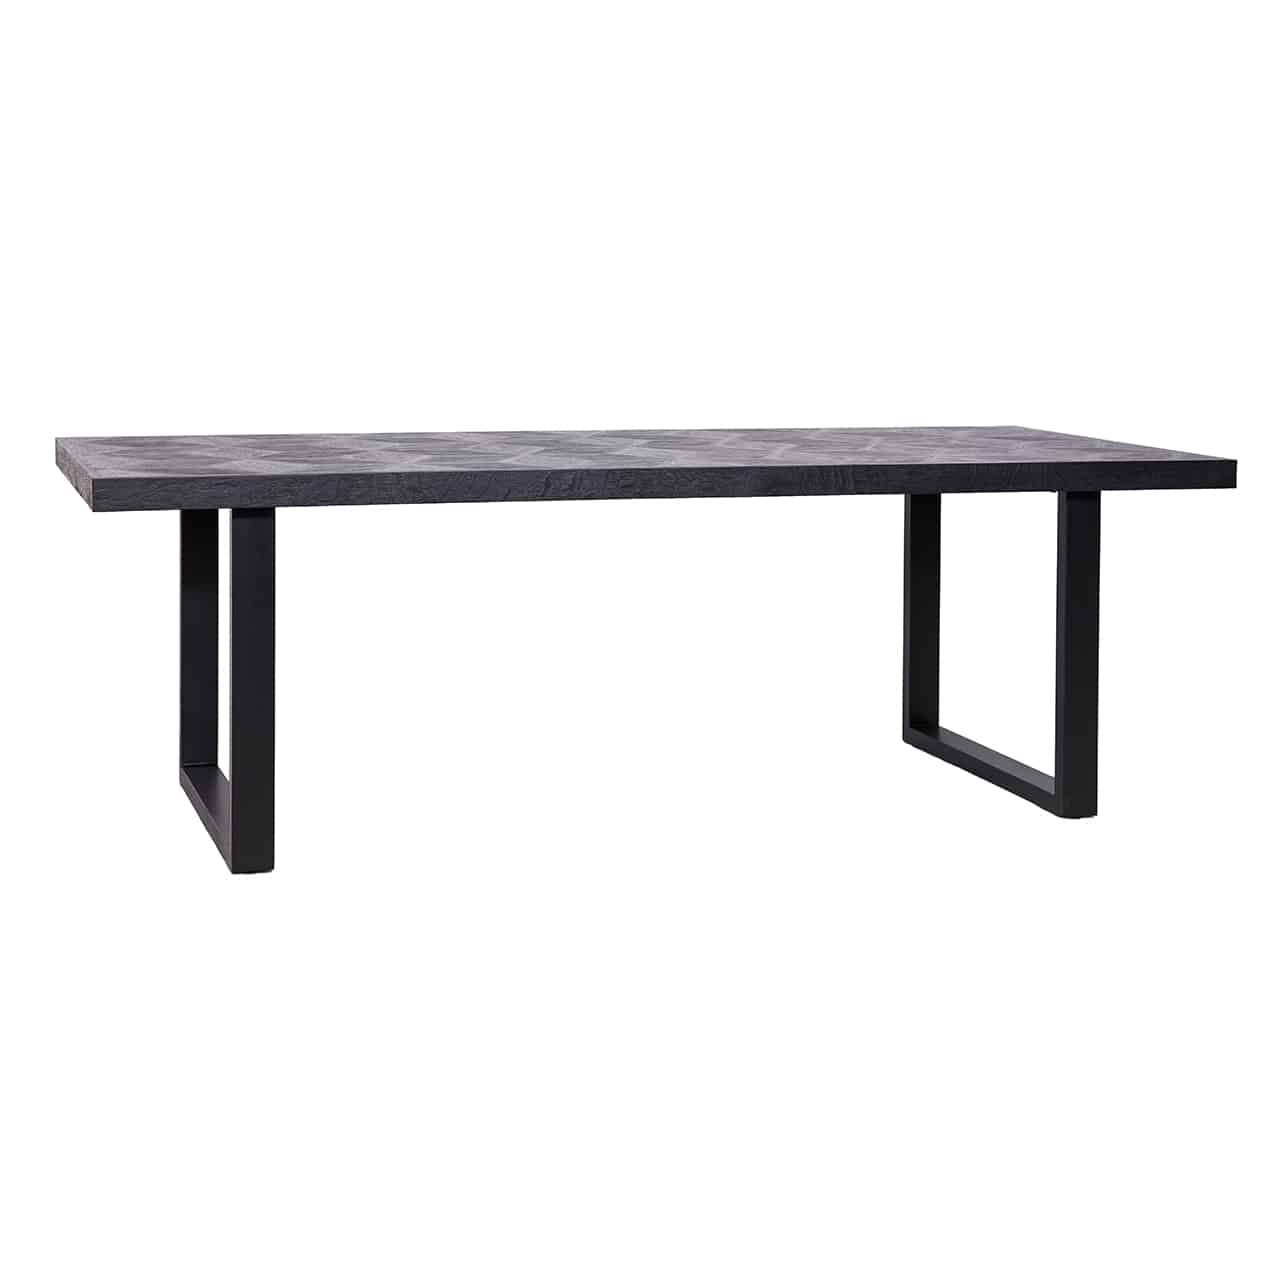 Schwarzer Esstisch beidseitig mit breiten Kufen aus Edelstahl, darauf eine lange, rechteckige Tischplatte aus Holz im Rautenmuster.